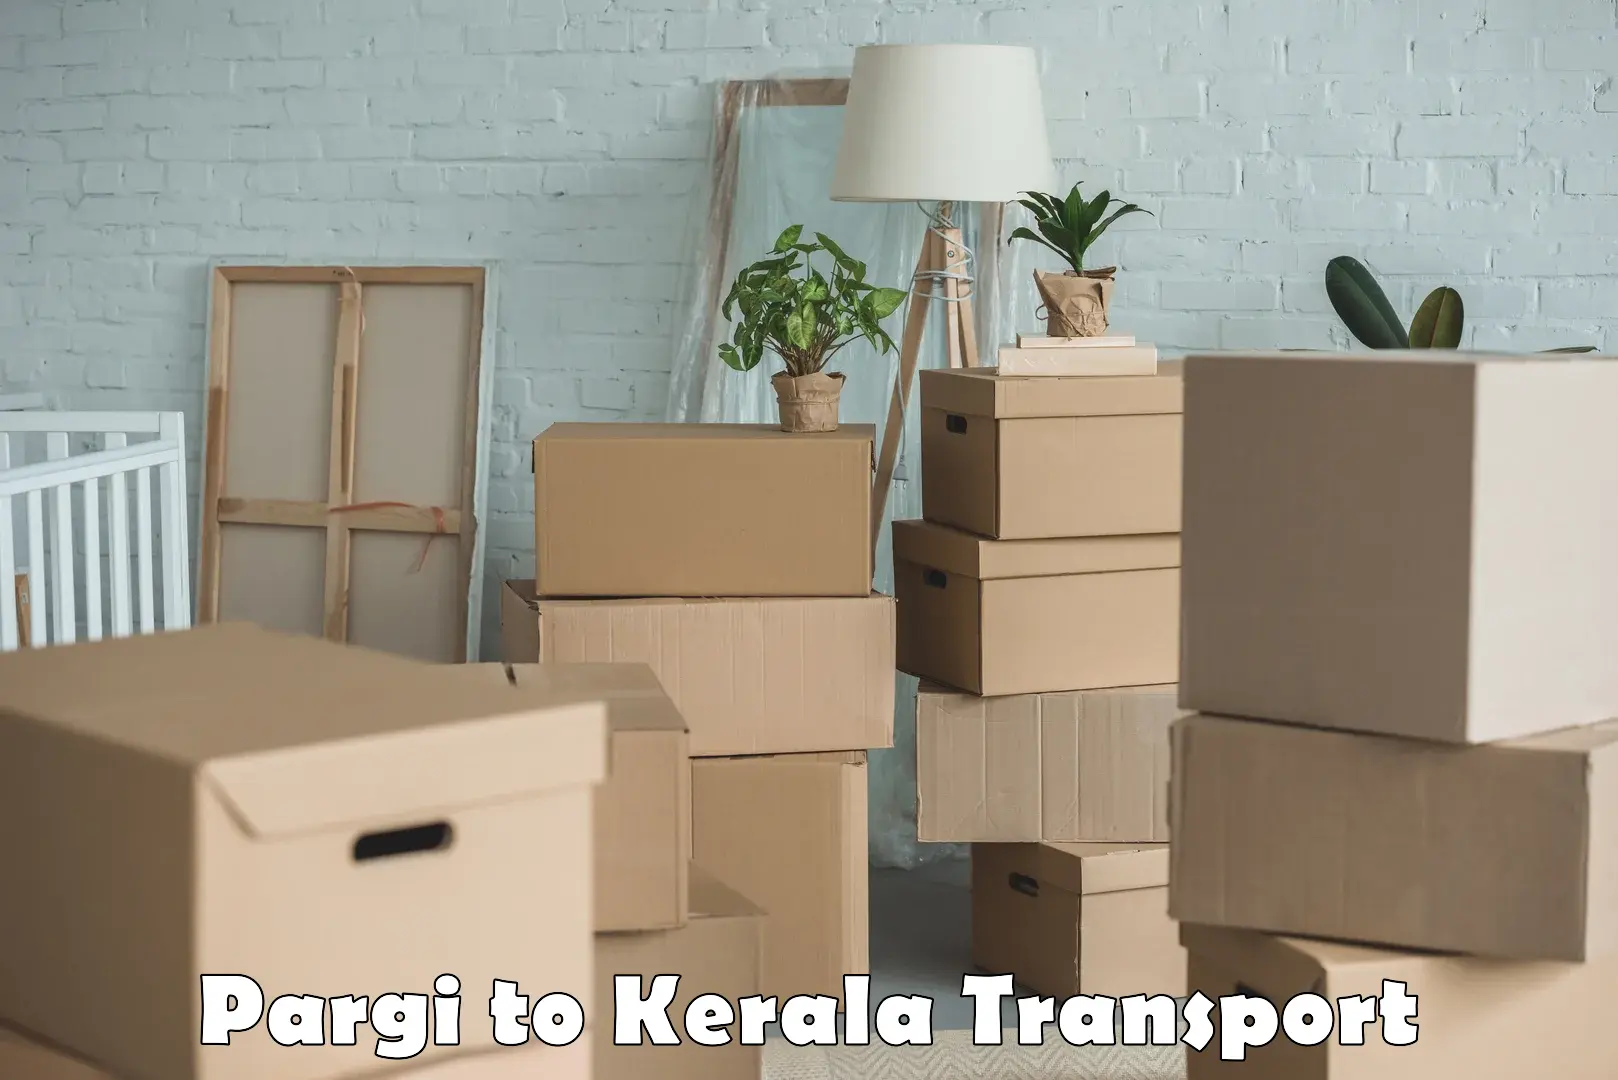 Parcel transport services Pargi to Kuthiathode